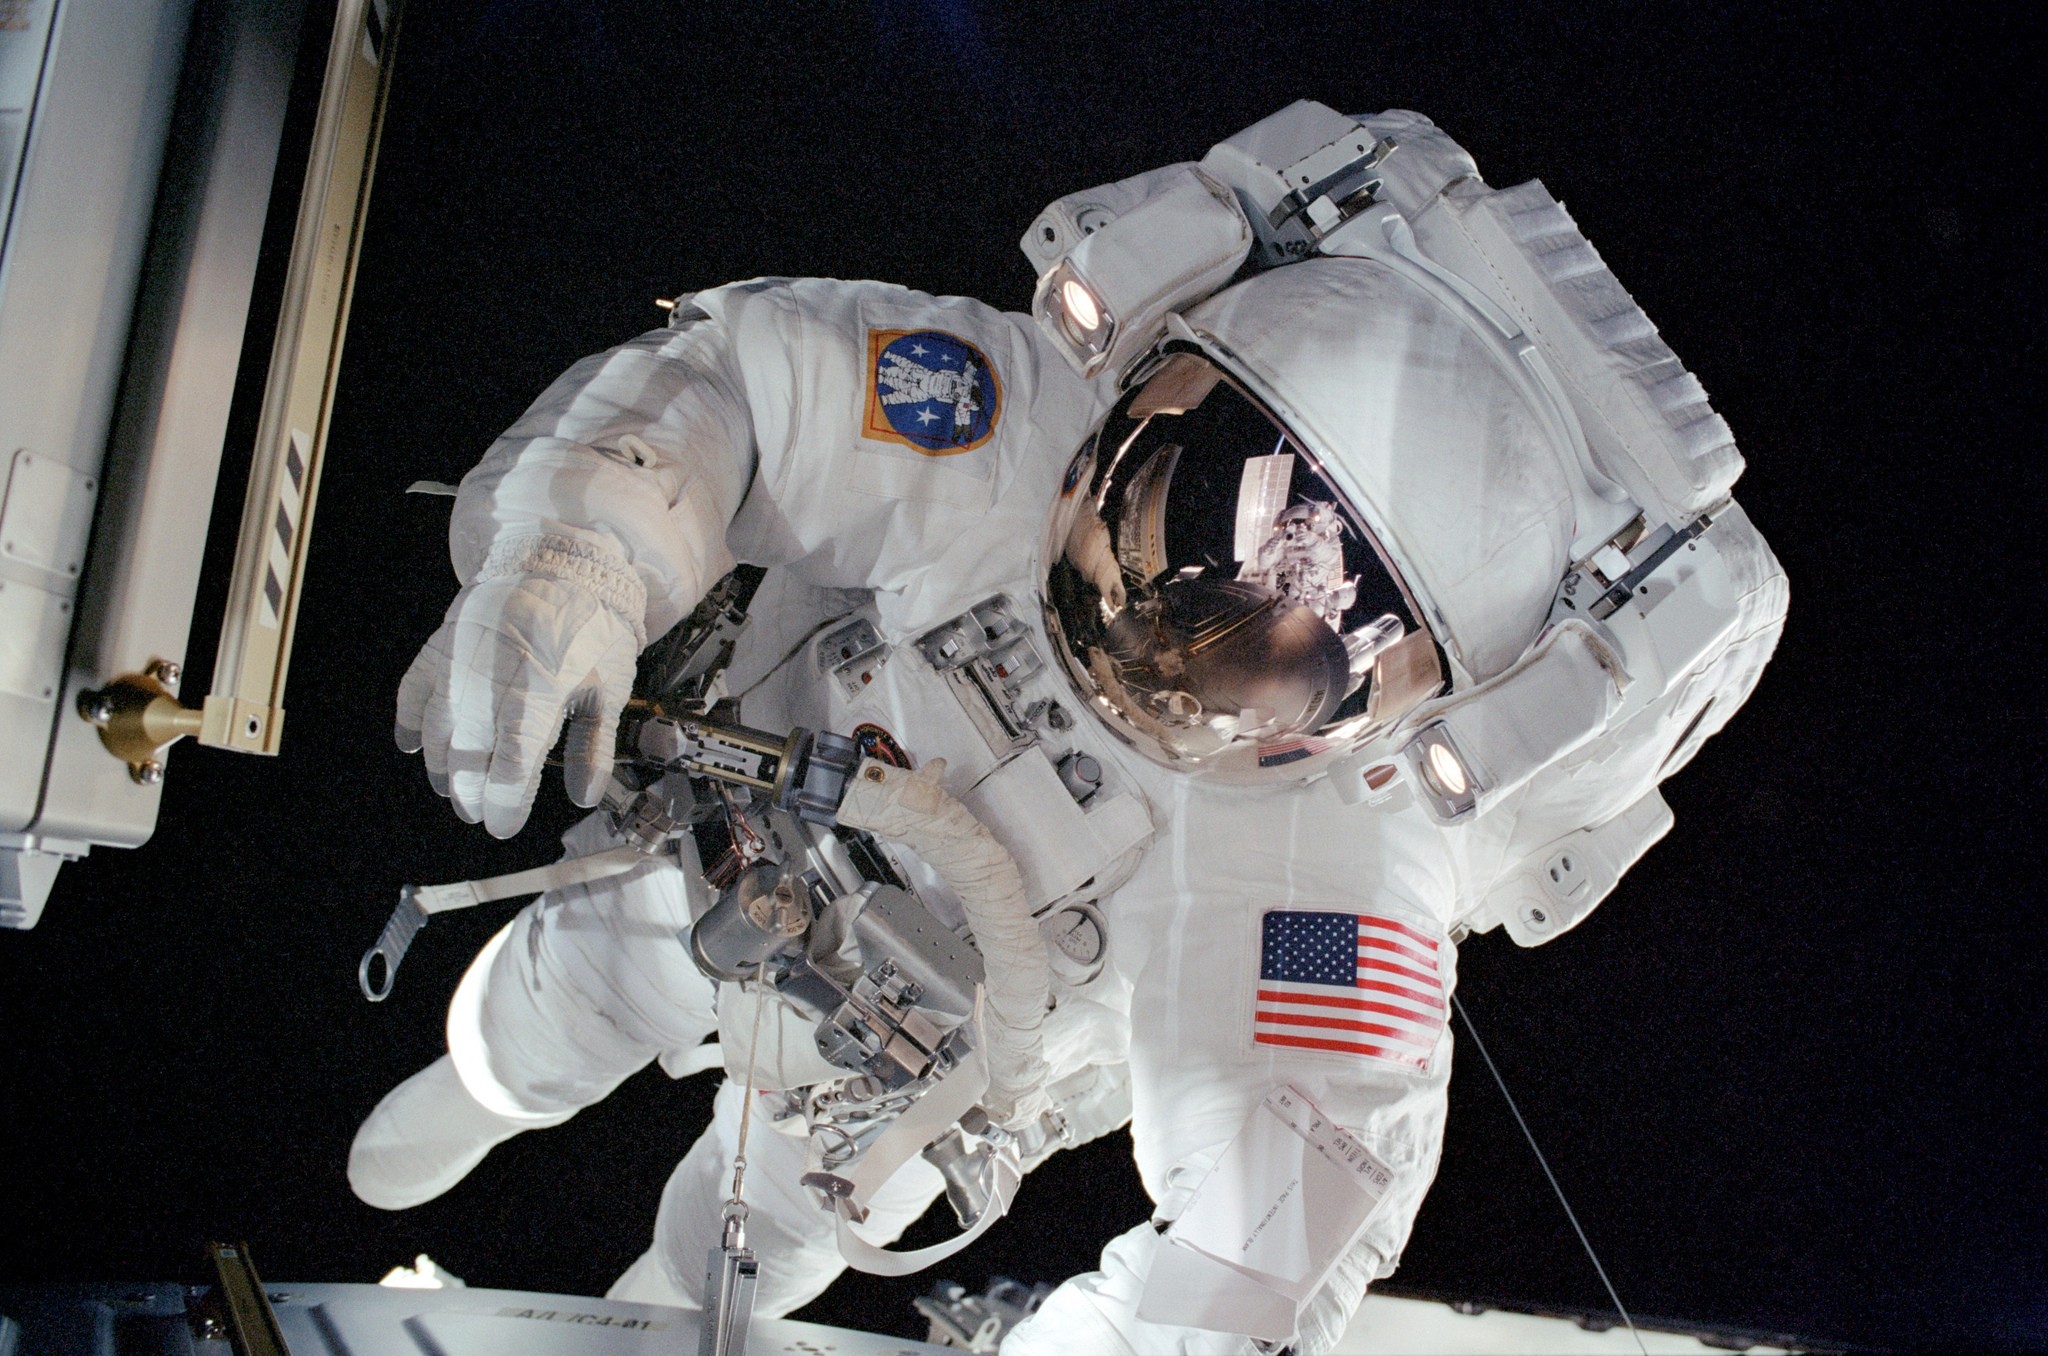 A identidade do astronauta tratado recentemente não foi compartilhada pelos médicos. Acima, Patrick Forrester durante uma caminhada espacial, em 2001 (Foto: NASA) (Foto: Nasa)